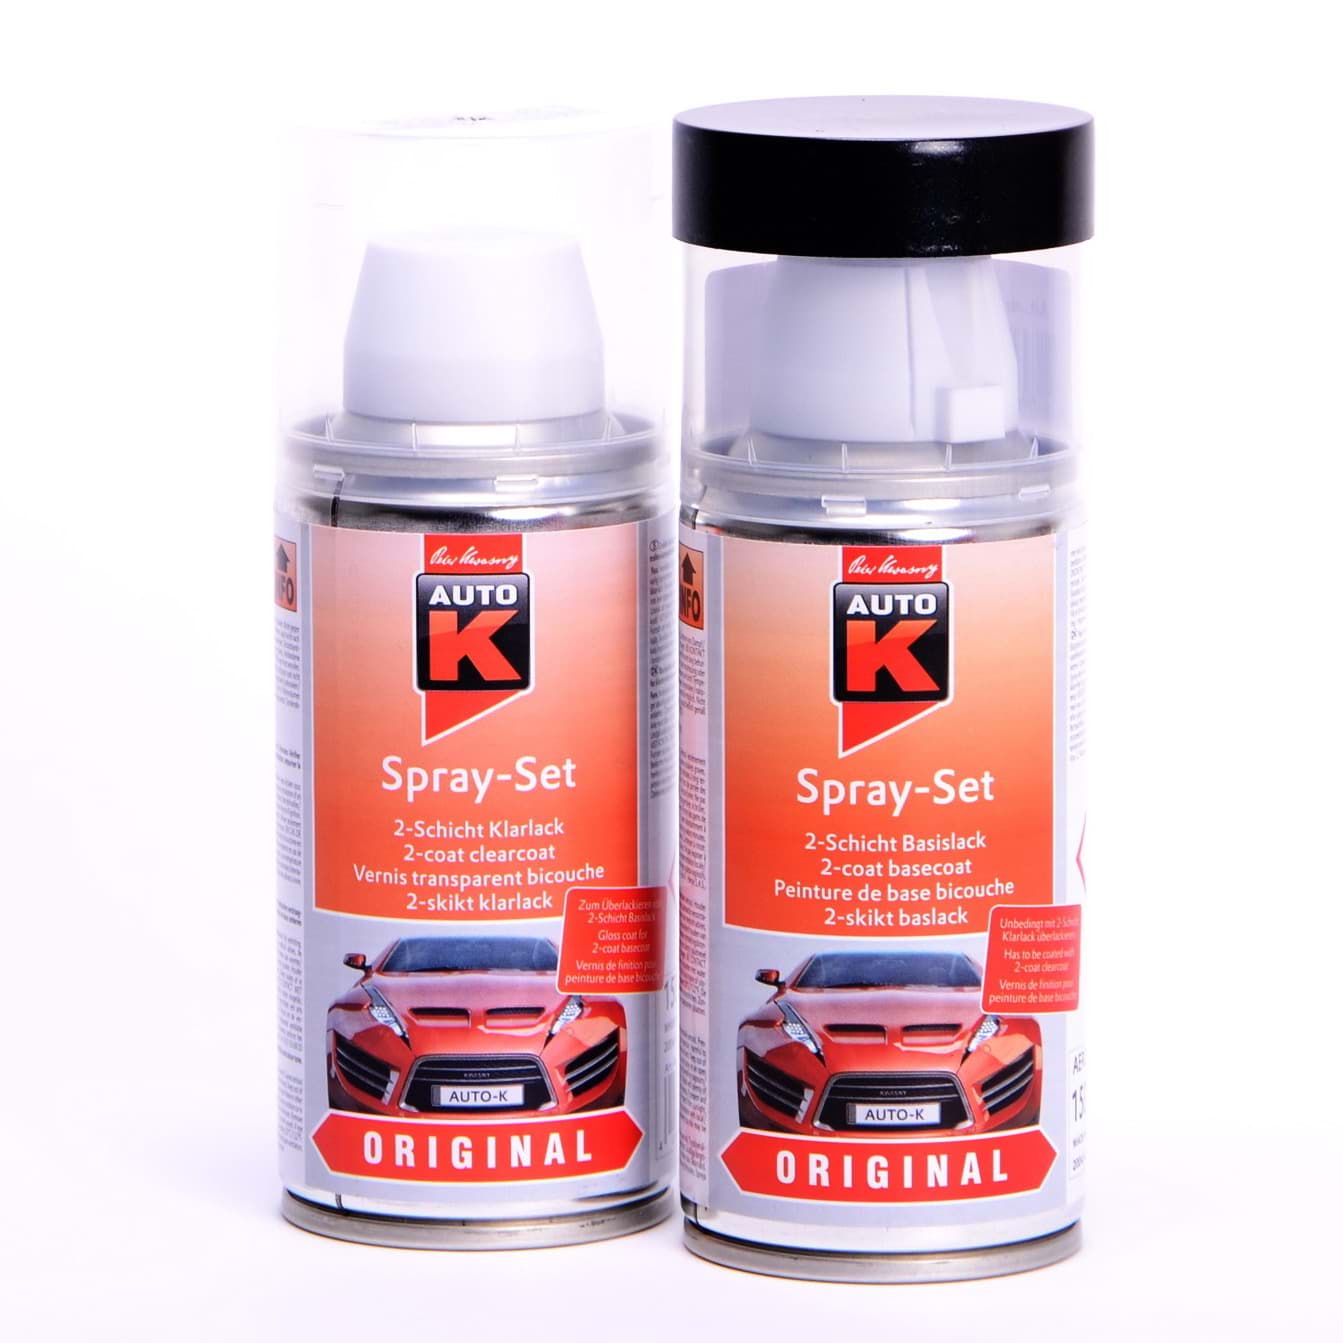 Afbeelding van Auto-K Spray-Set Autolack für BMW 237 Granitsilber met 27251